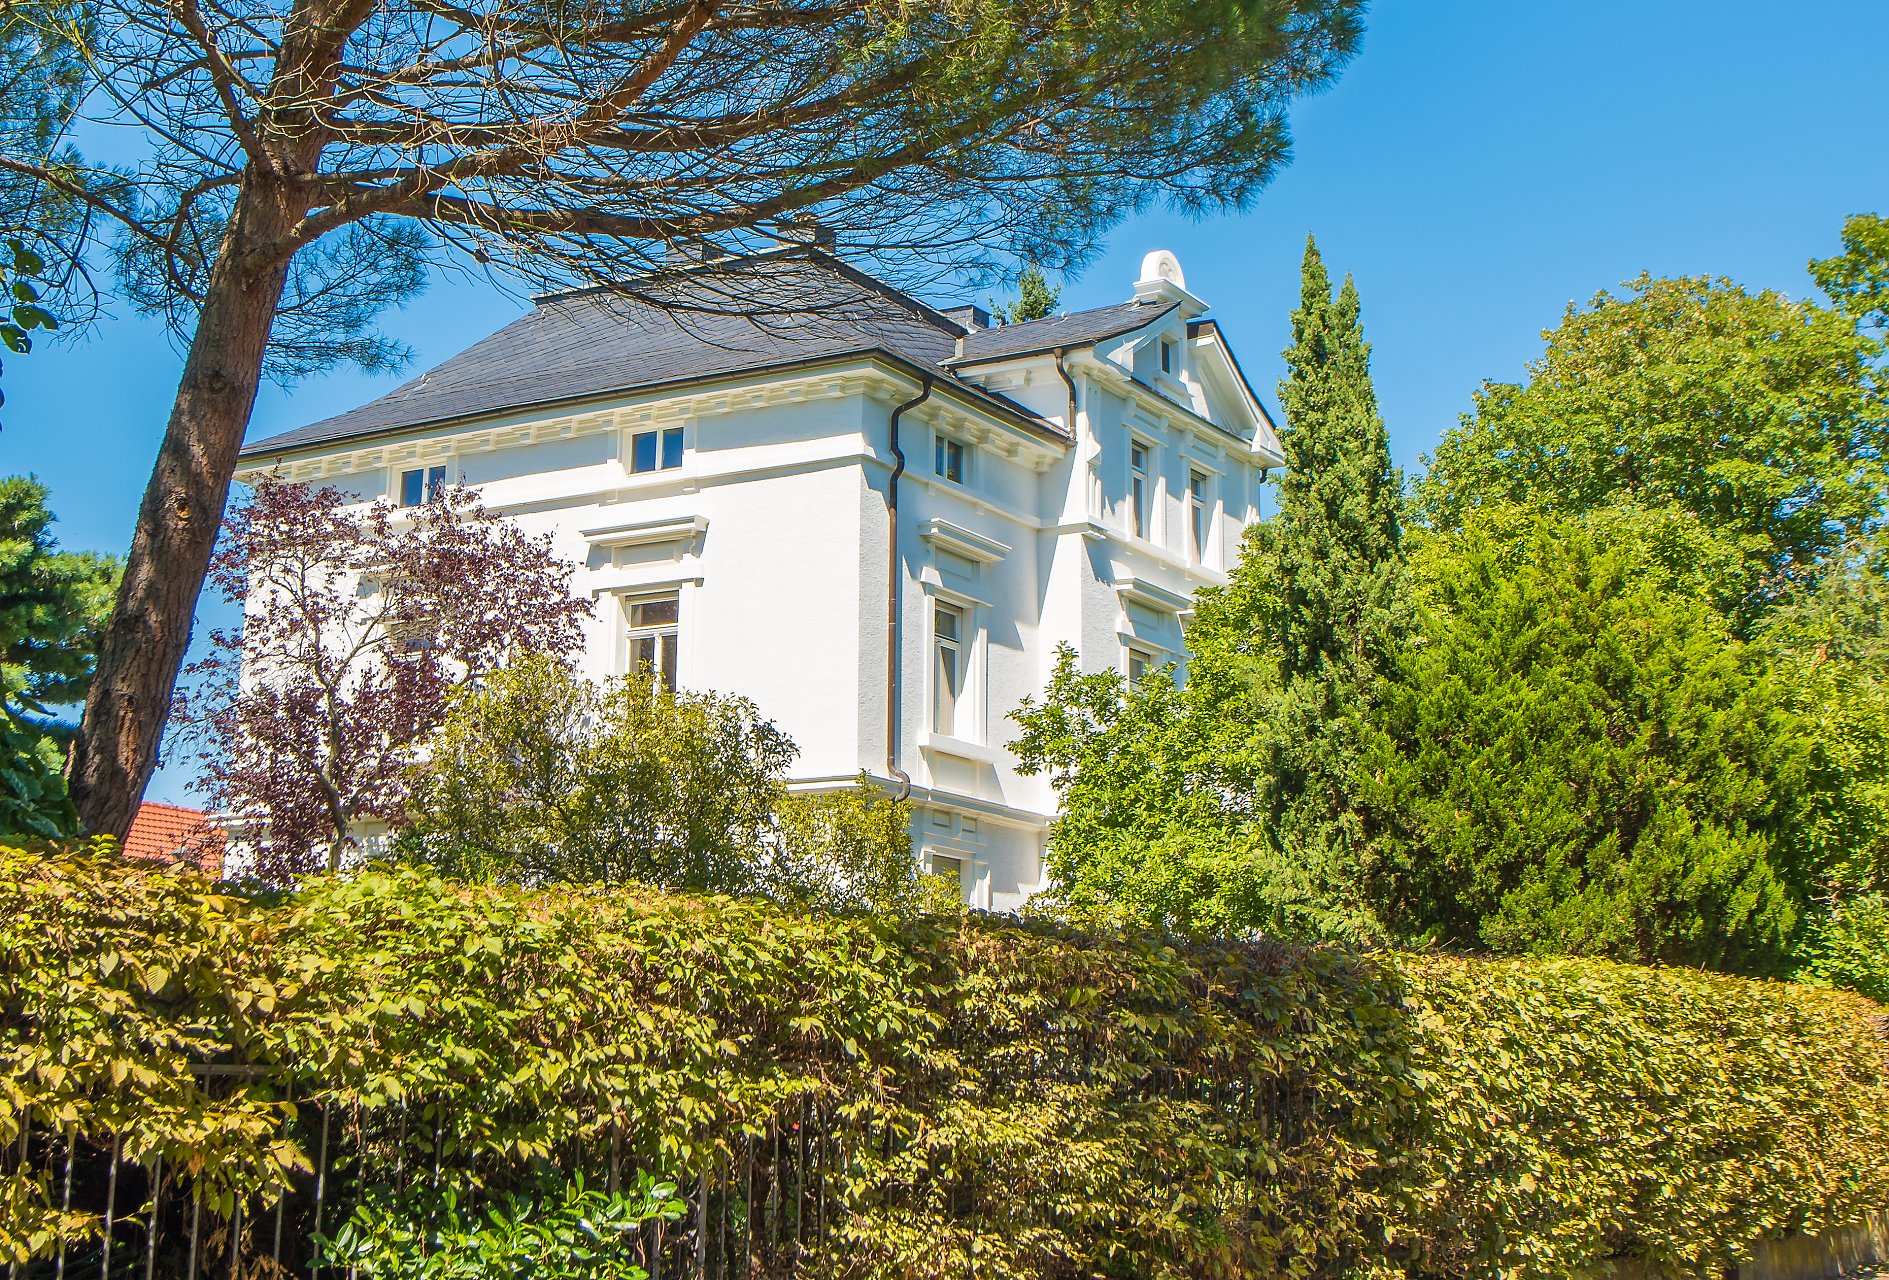 Jugenheim Villa des Historismus mit klassizistischem Mittelresalit und zusätzlichem Gartenhaus - Oliver Reifferscheid - Immobilienmakler Darmstadt